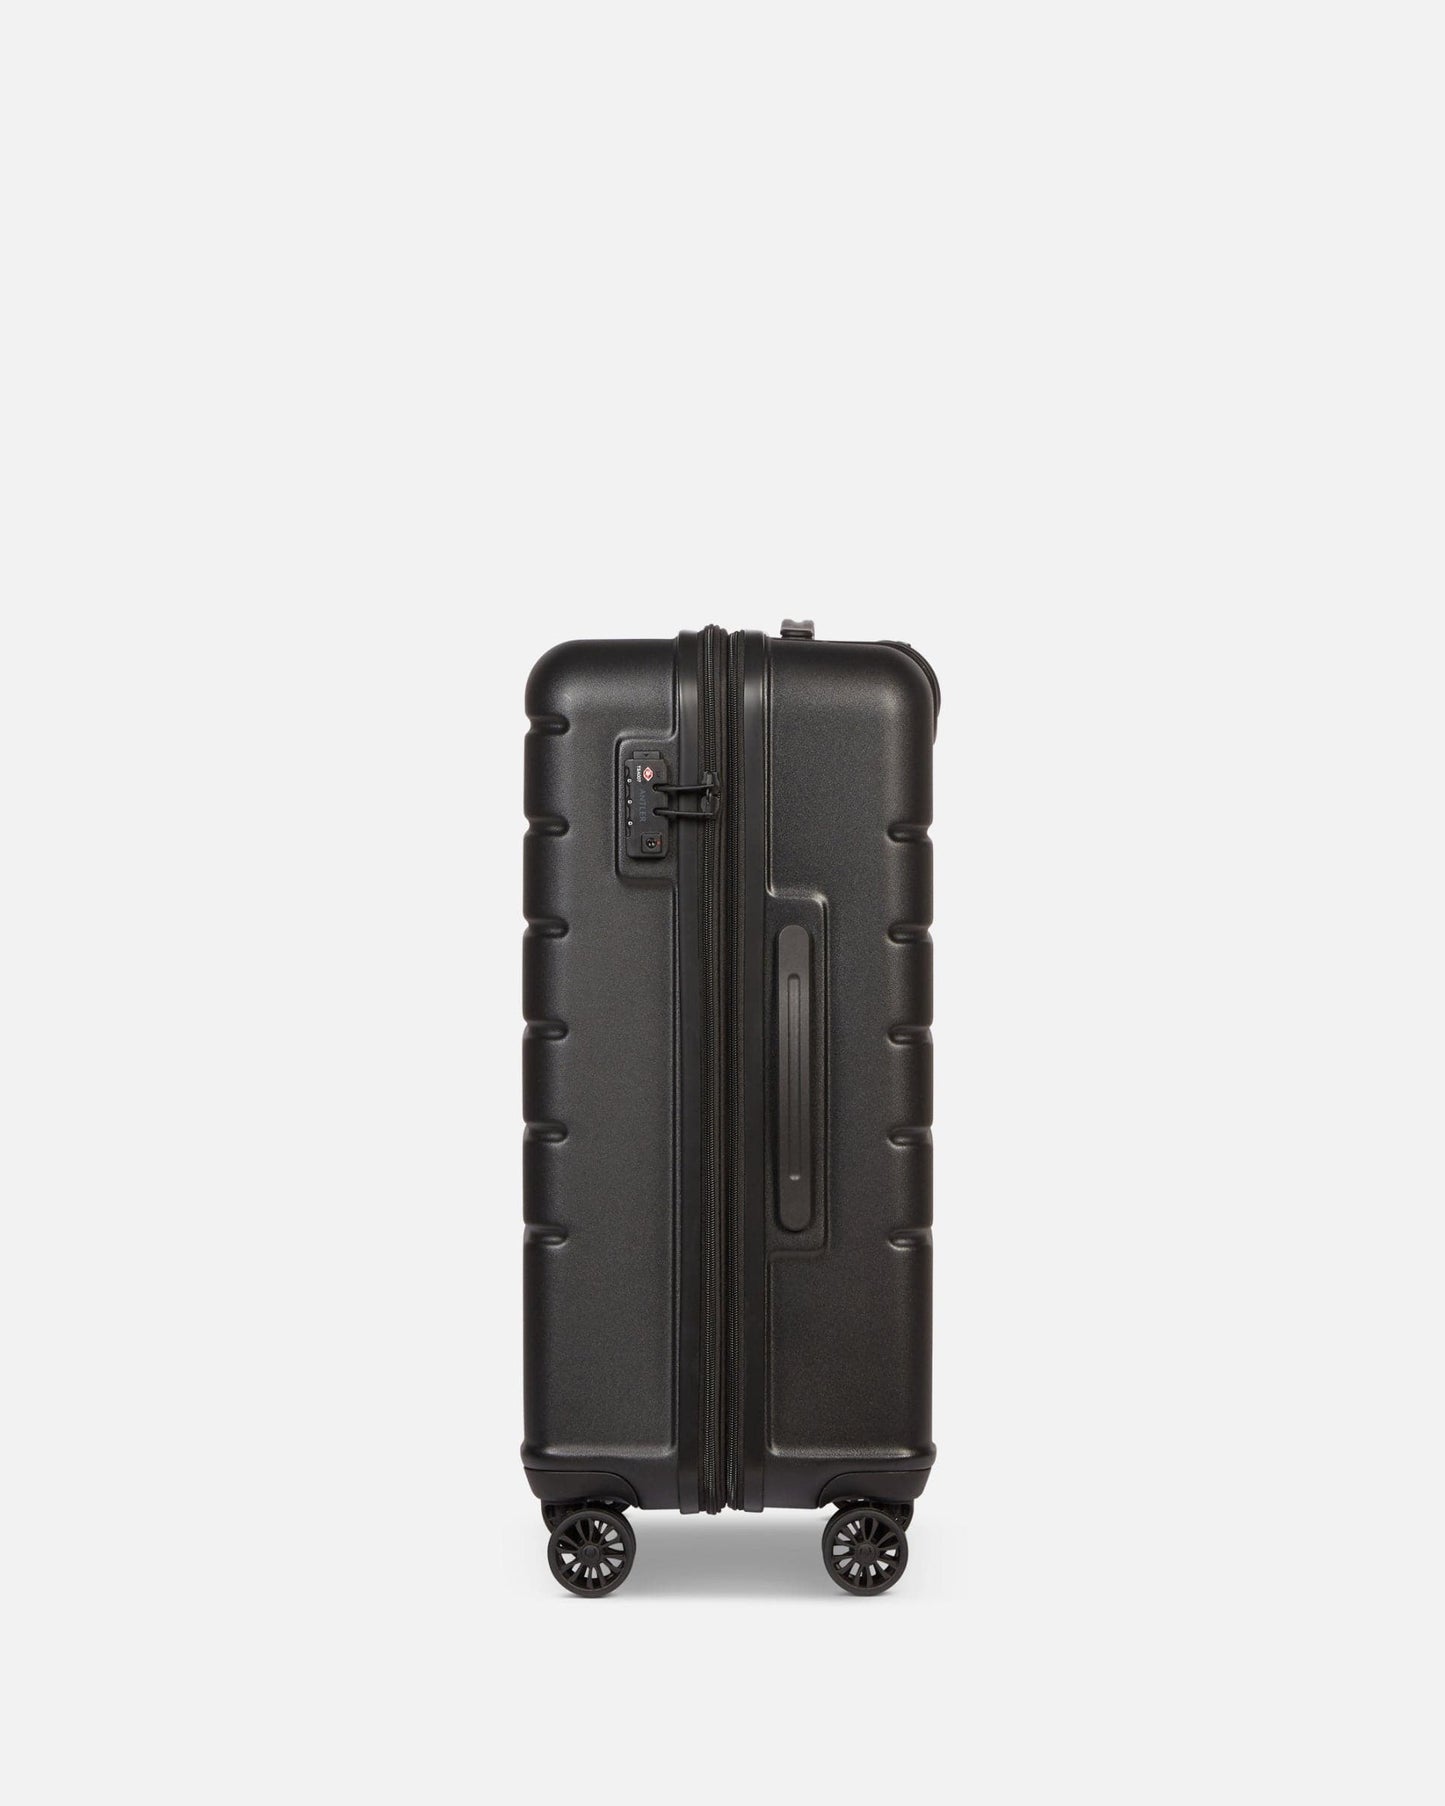 Antler UK Luggage -  Logo medium in black - Hard Suitcases Logo Medium Suitcase Black | Lightweight Hard Shell Luggage